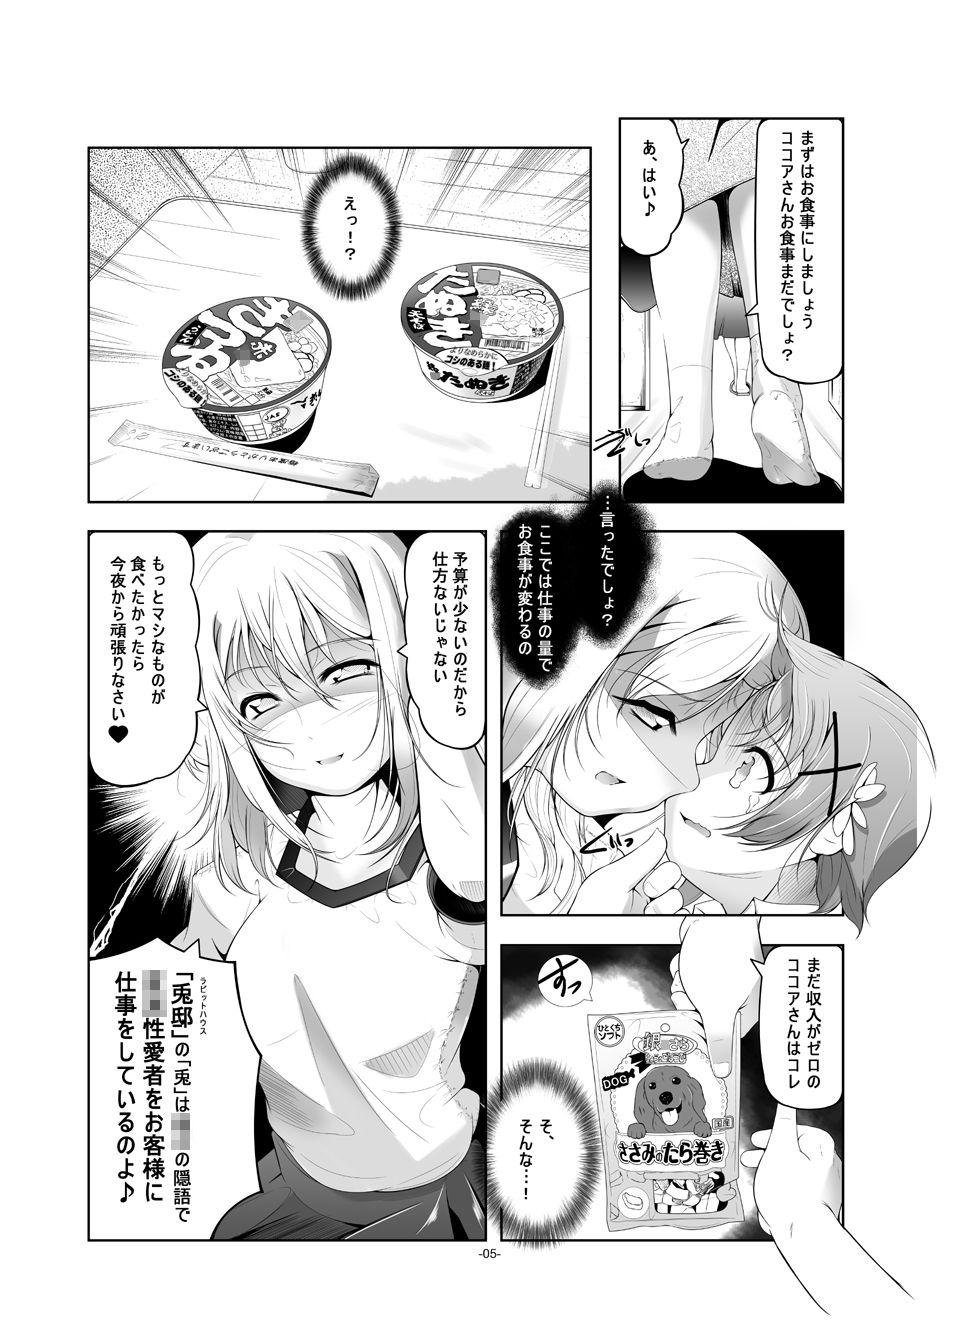 Super Hot Porn Loli Senyou Shoukan Rabbit House - Gochuumon wa usagi desu ka Bunduda - Page 6